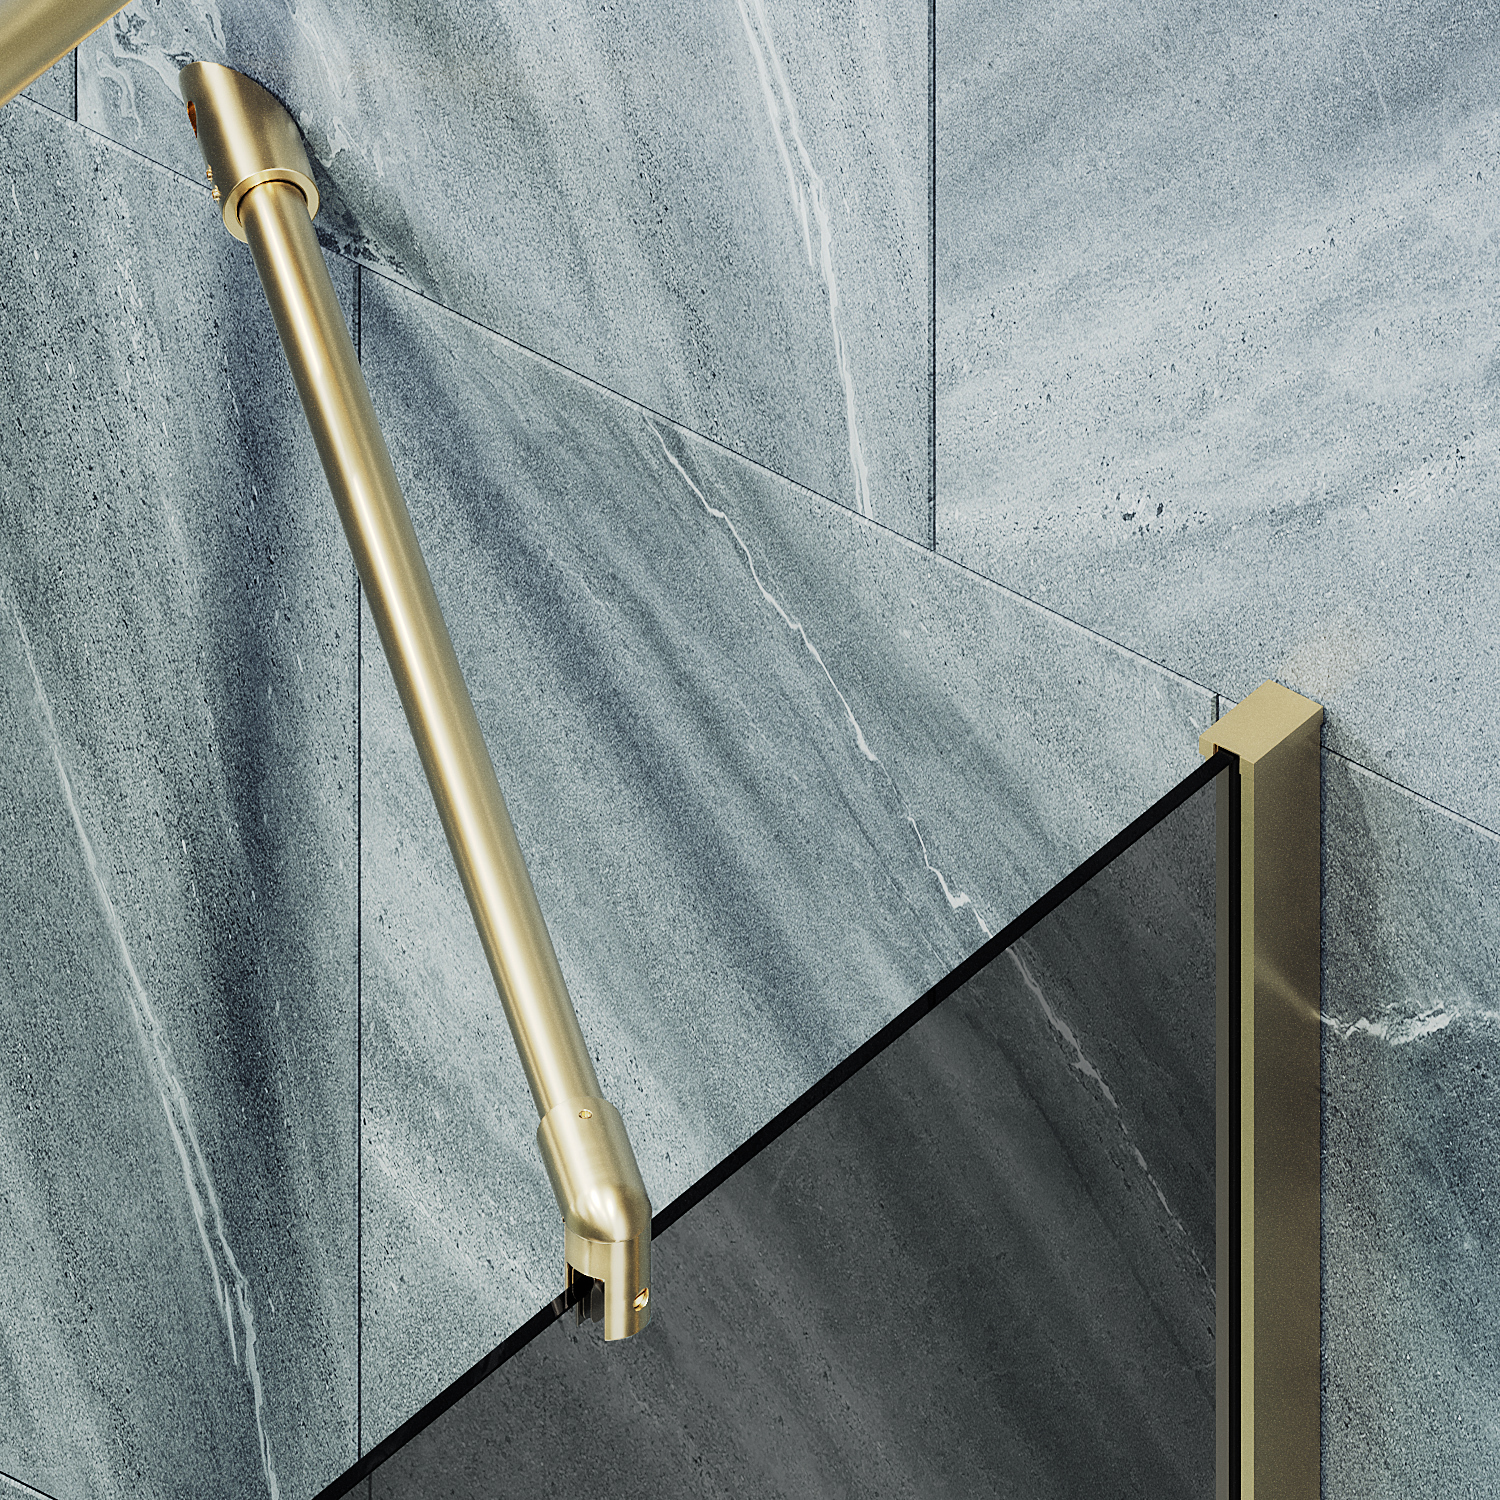 Шторка для ванны MaybahGlass 80х140 MGV-82-3ш стекло графит, профиль золото - фото 3